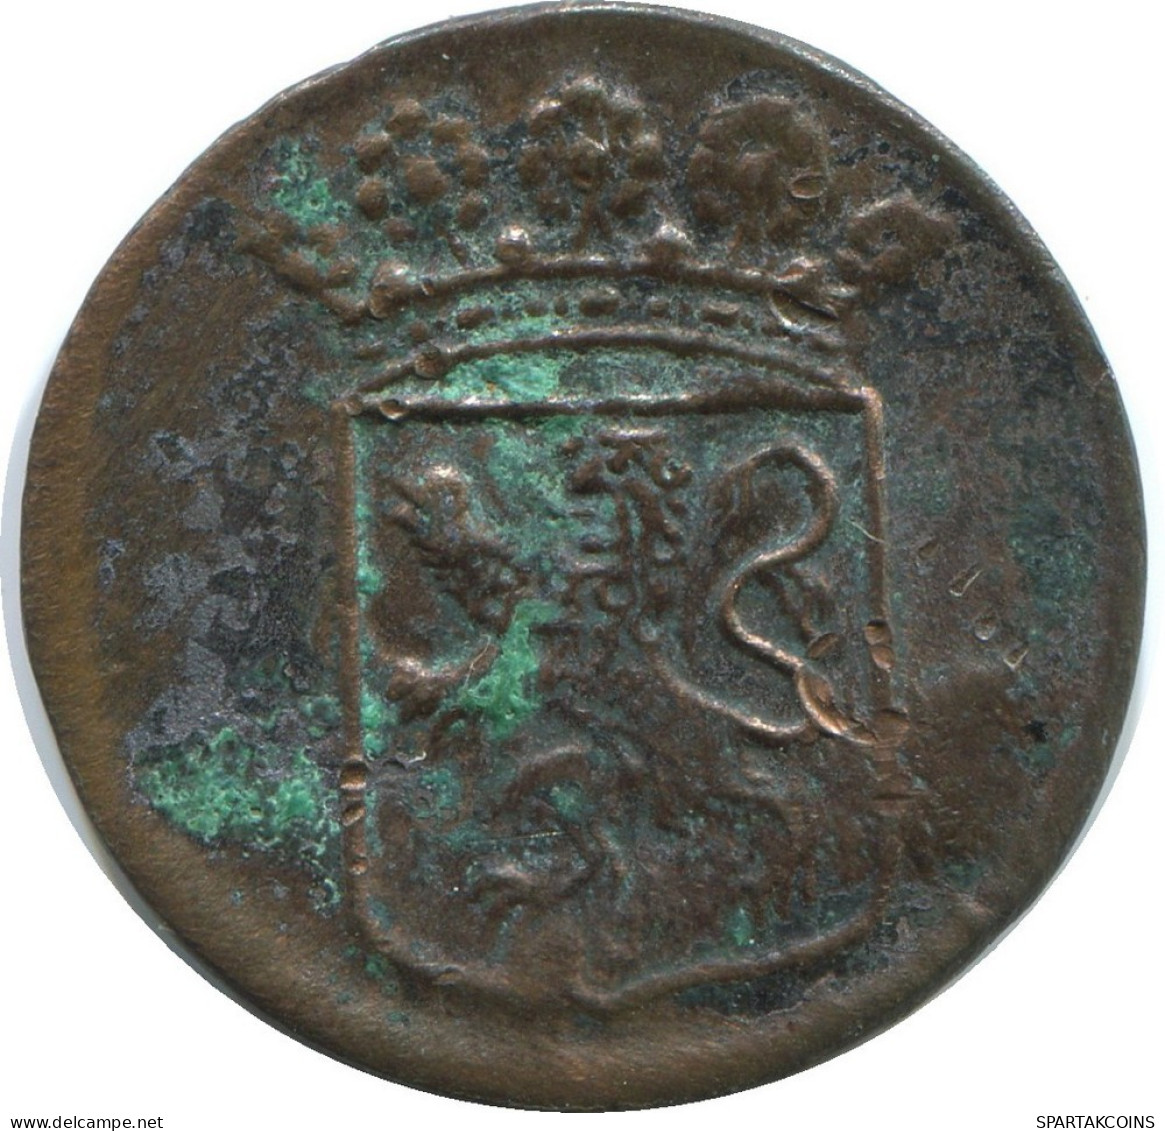 1746 HOLLAND VOC DUIT NIEDERLANDE OSTINDIEN NY COLONIAL PENNY #VOC1193.8.D.A - Nederlands-Indië